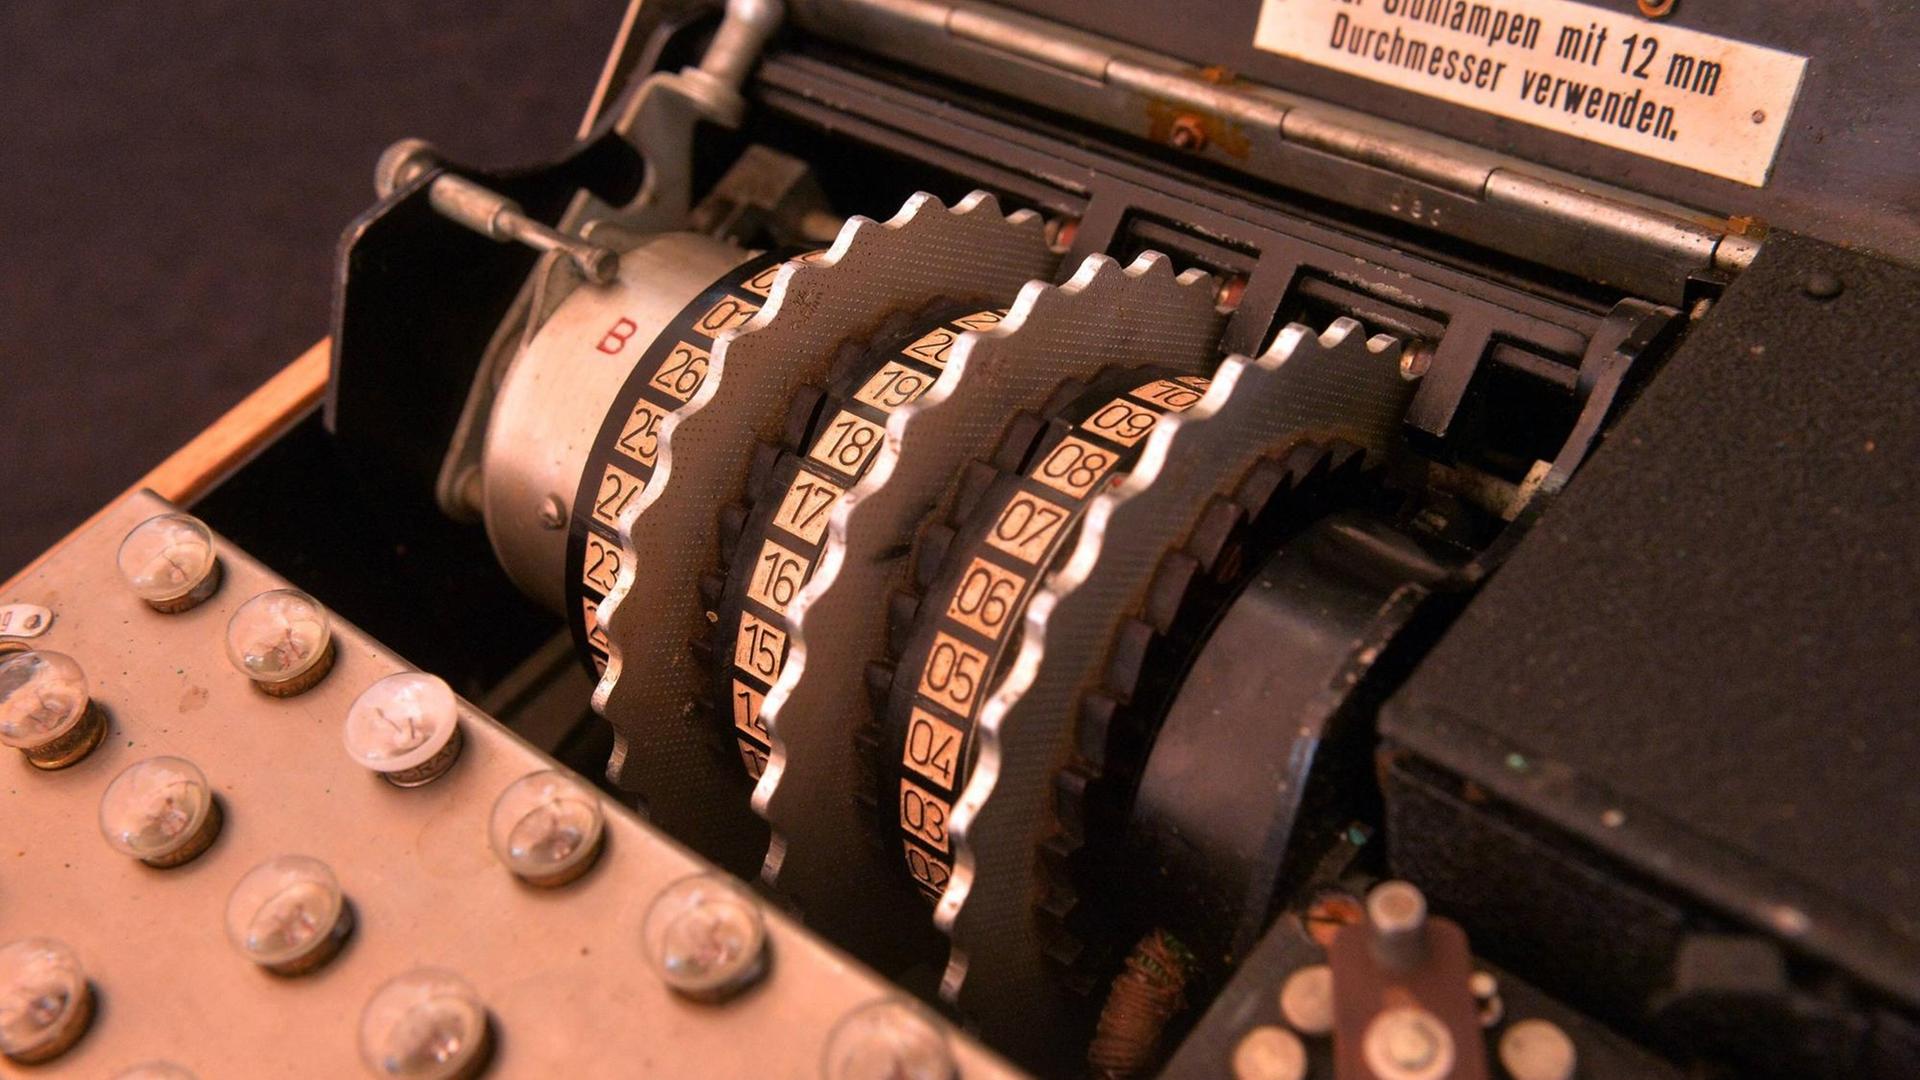 Eine Enigma, die von den Deutschen im Zweiten Weltkrieg zum codieren von Nachrichten genutzt wurde.